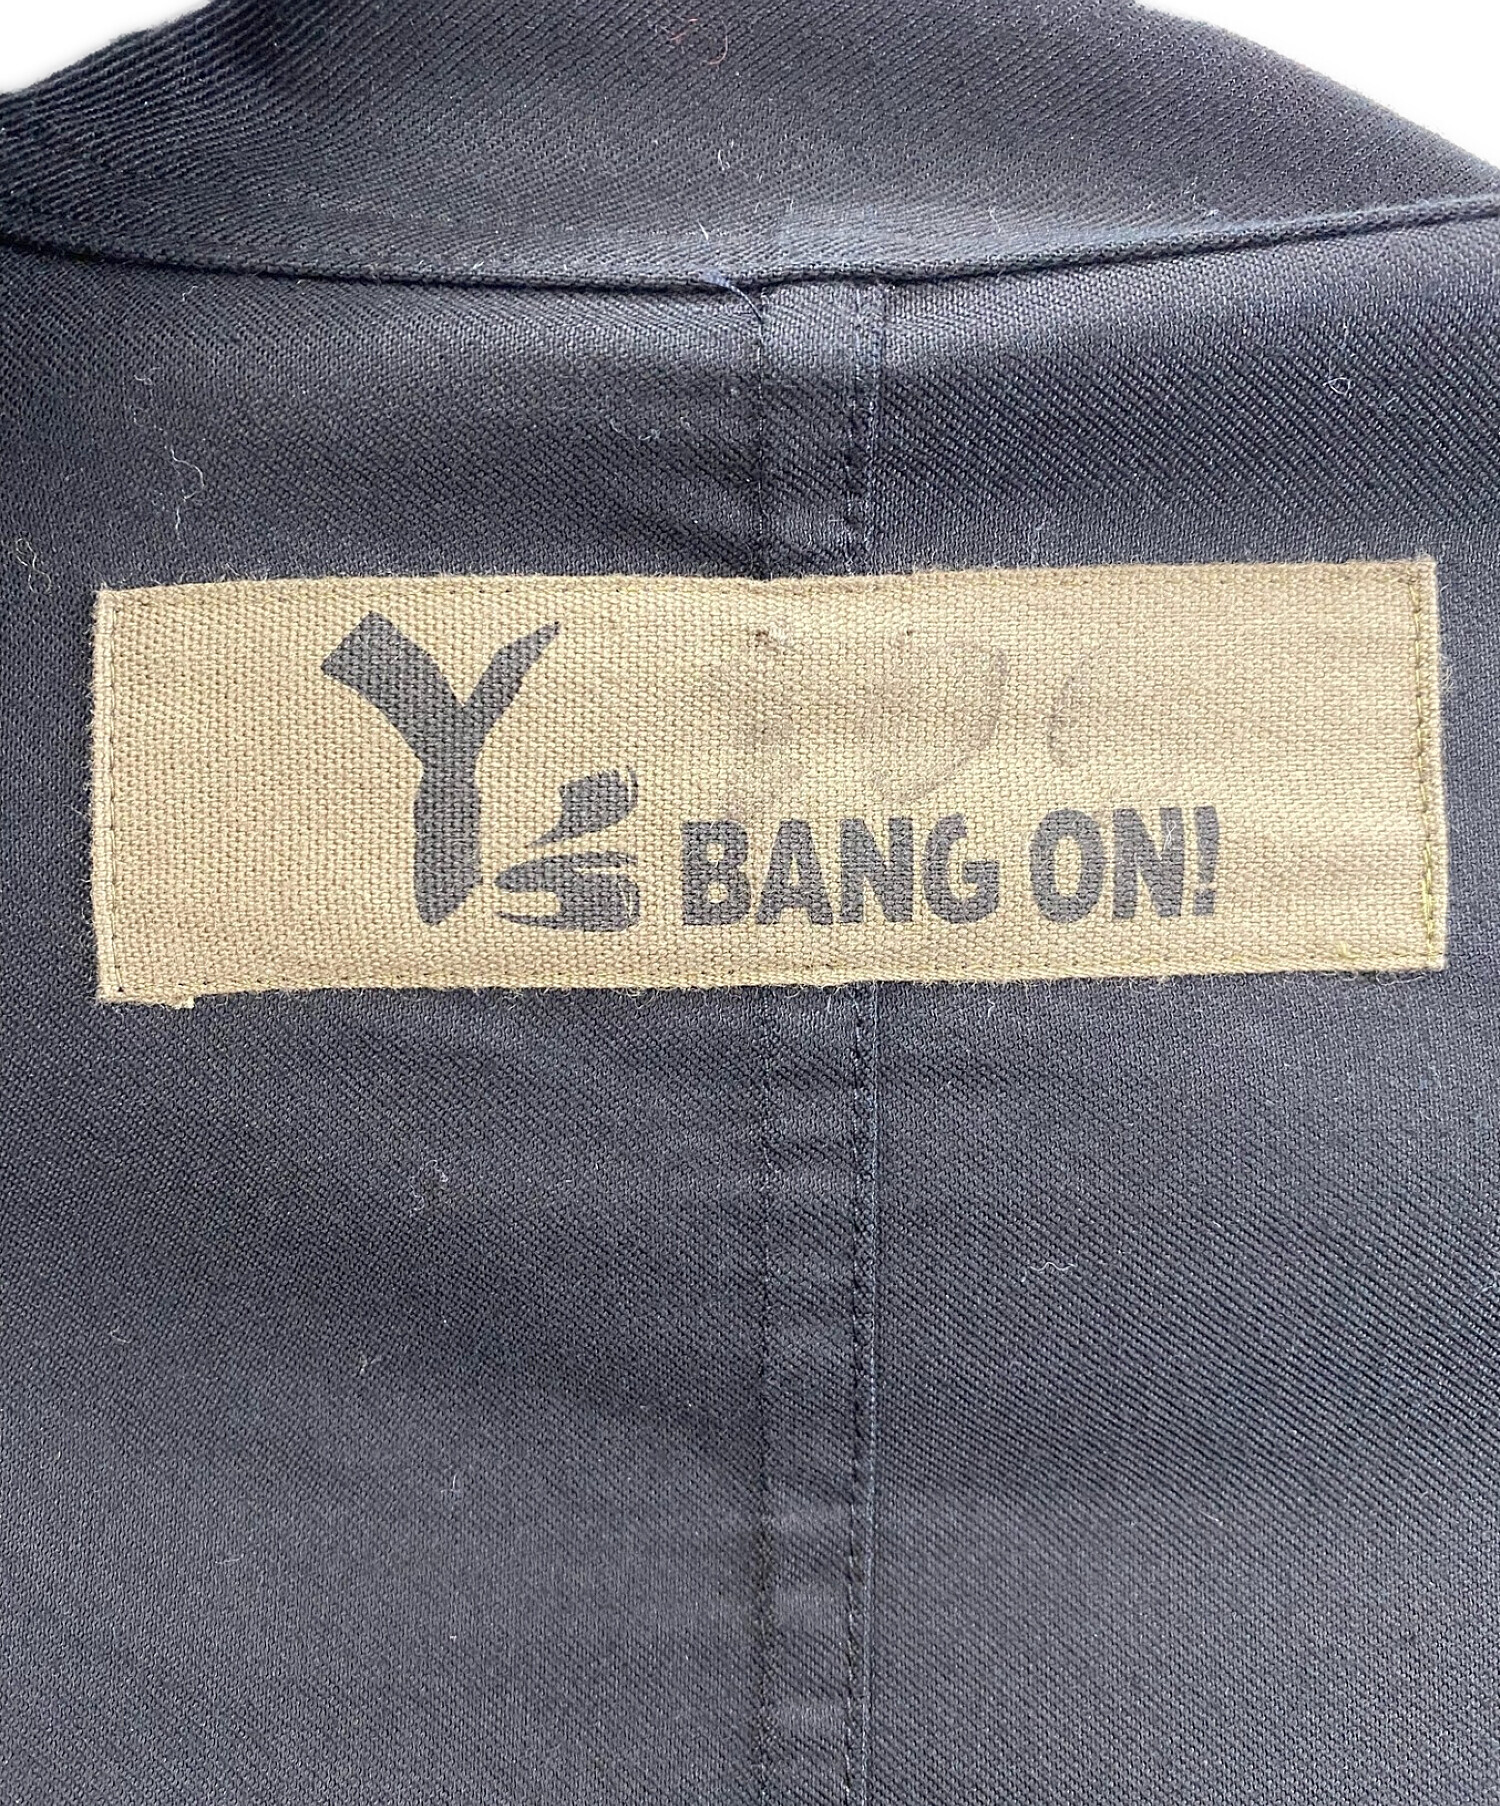 ワイズ  YA-B03-264 BANG ON 胸ポケットロング丈長袖シャツ メンズ 2